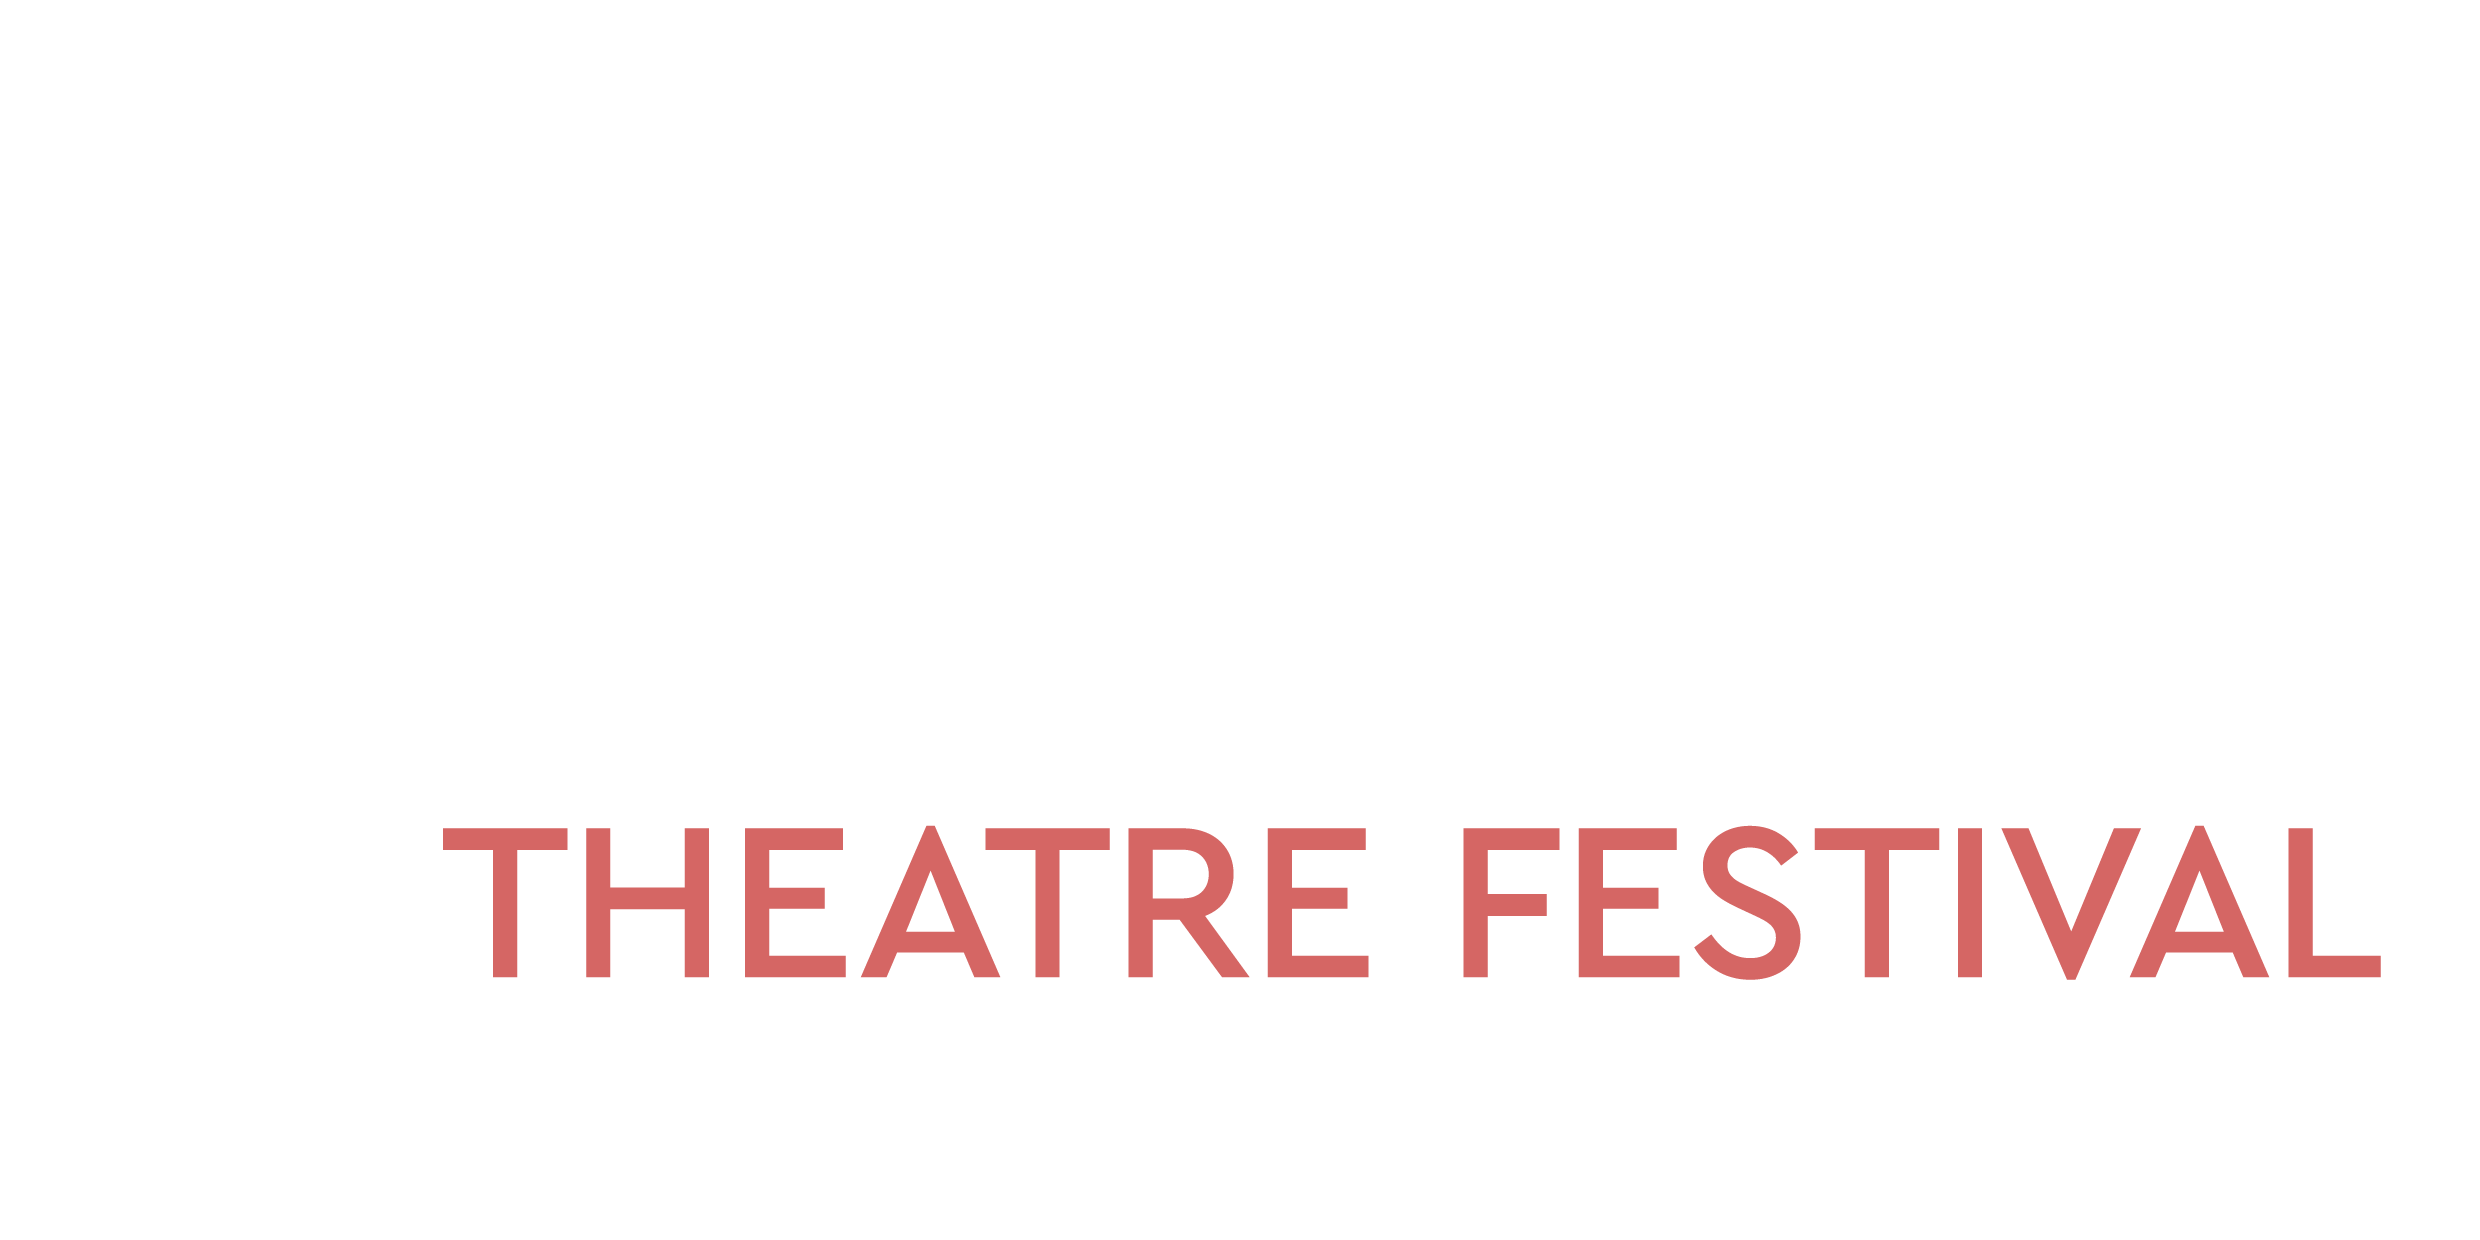 Voila Theatre Festival